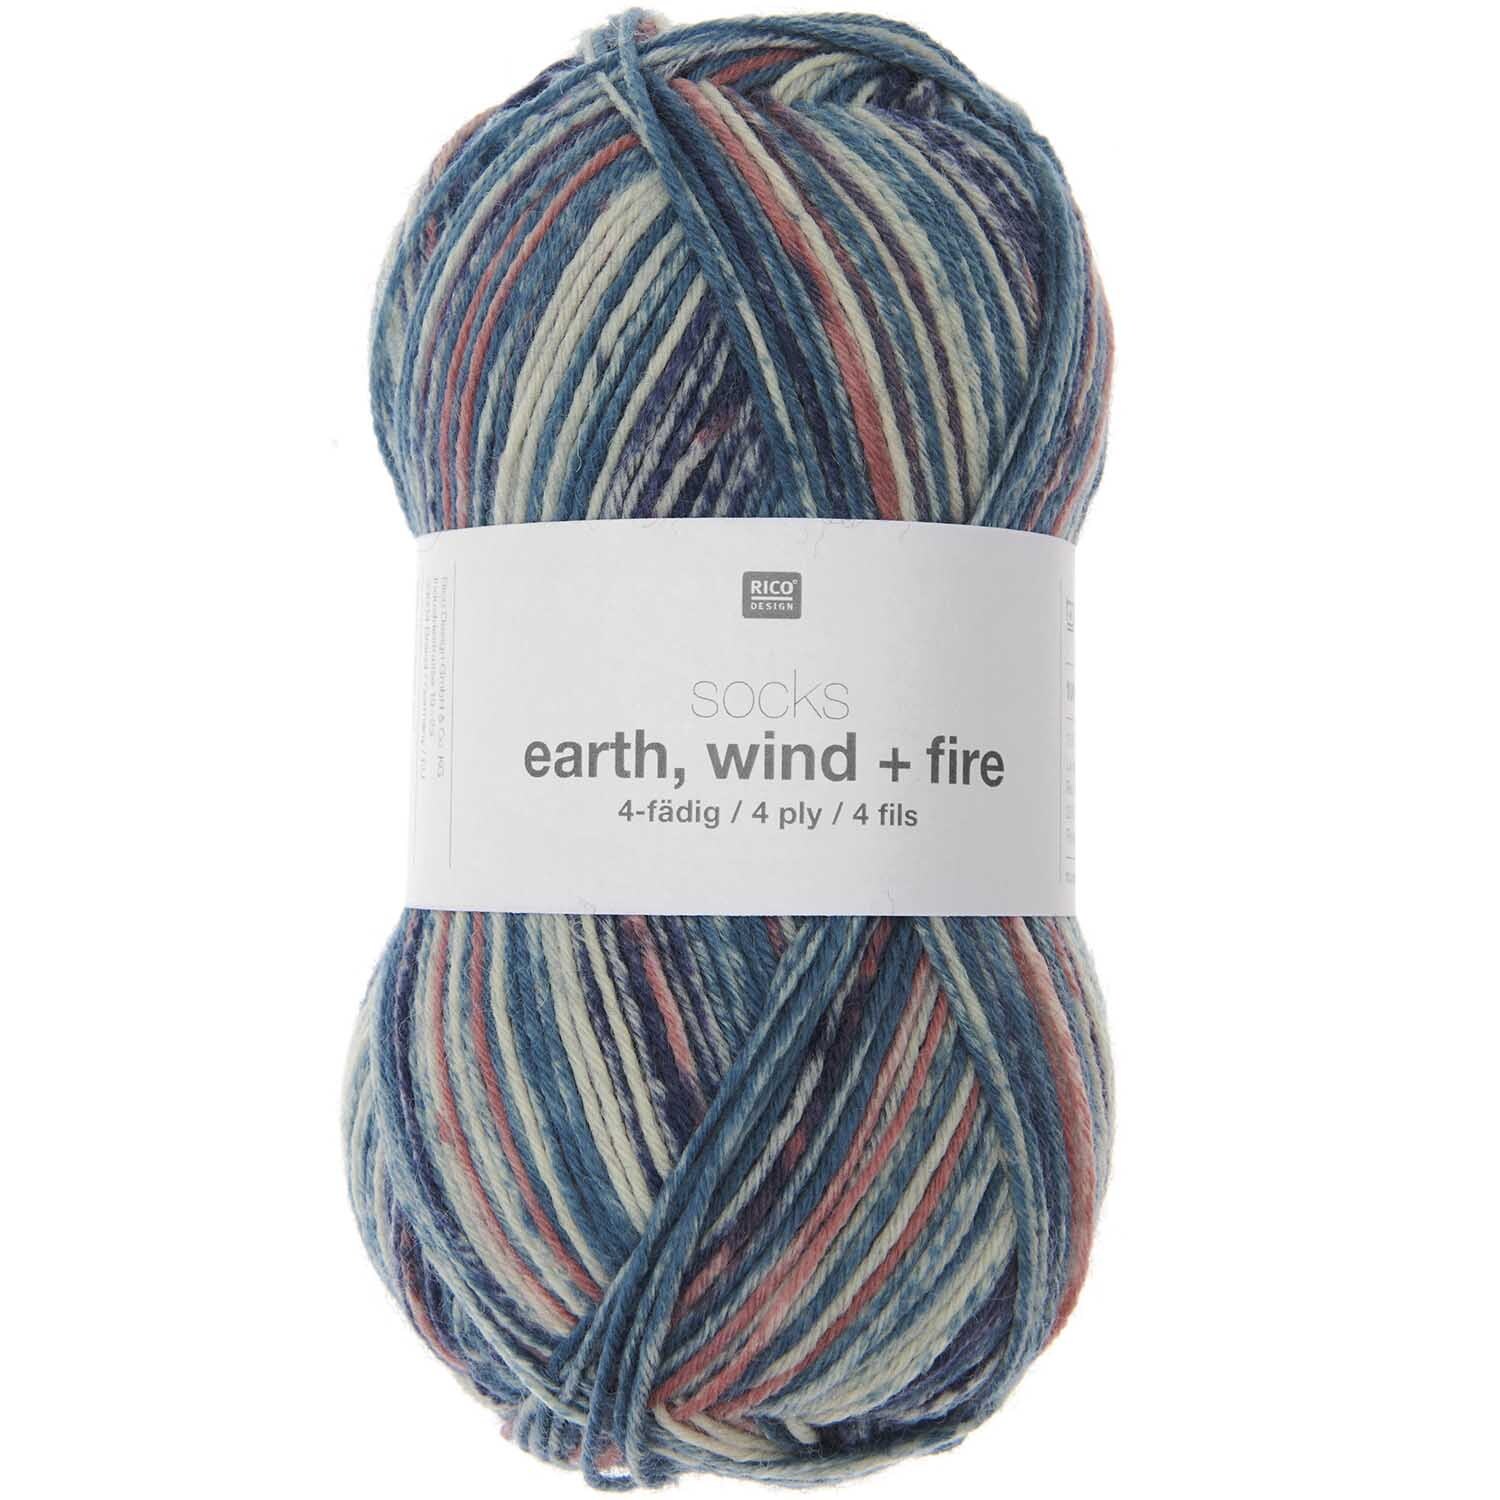 Socks Earth + Wind + Fire 4-fägig